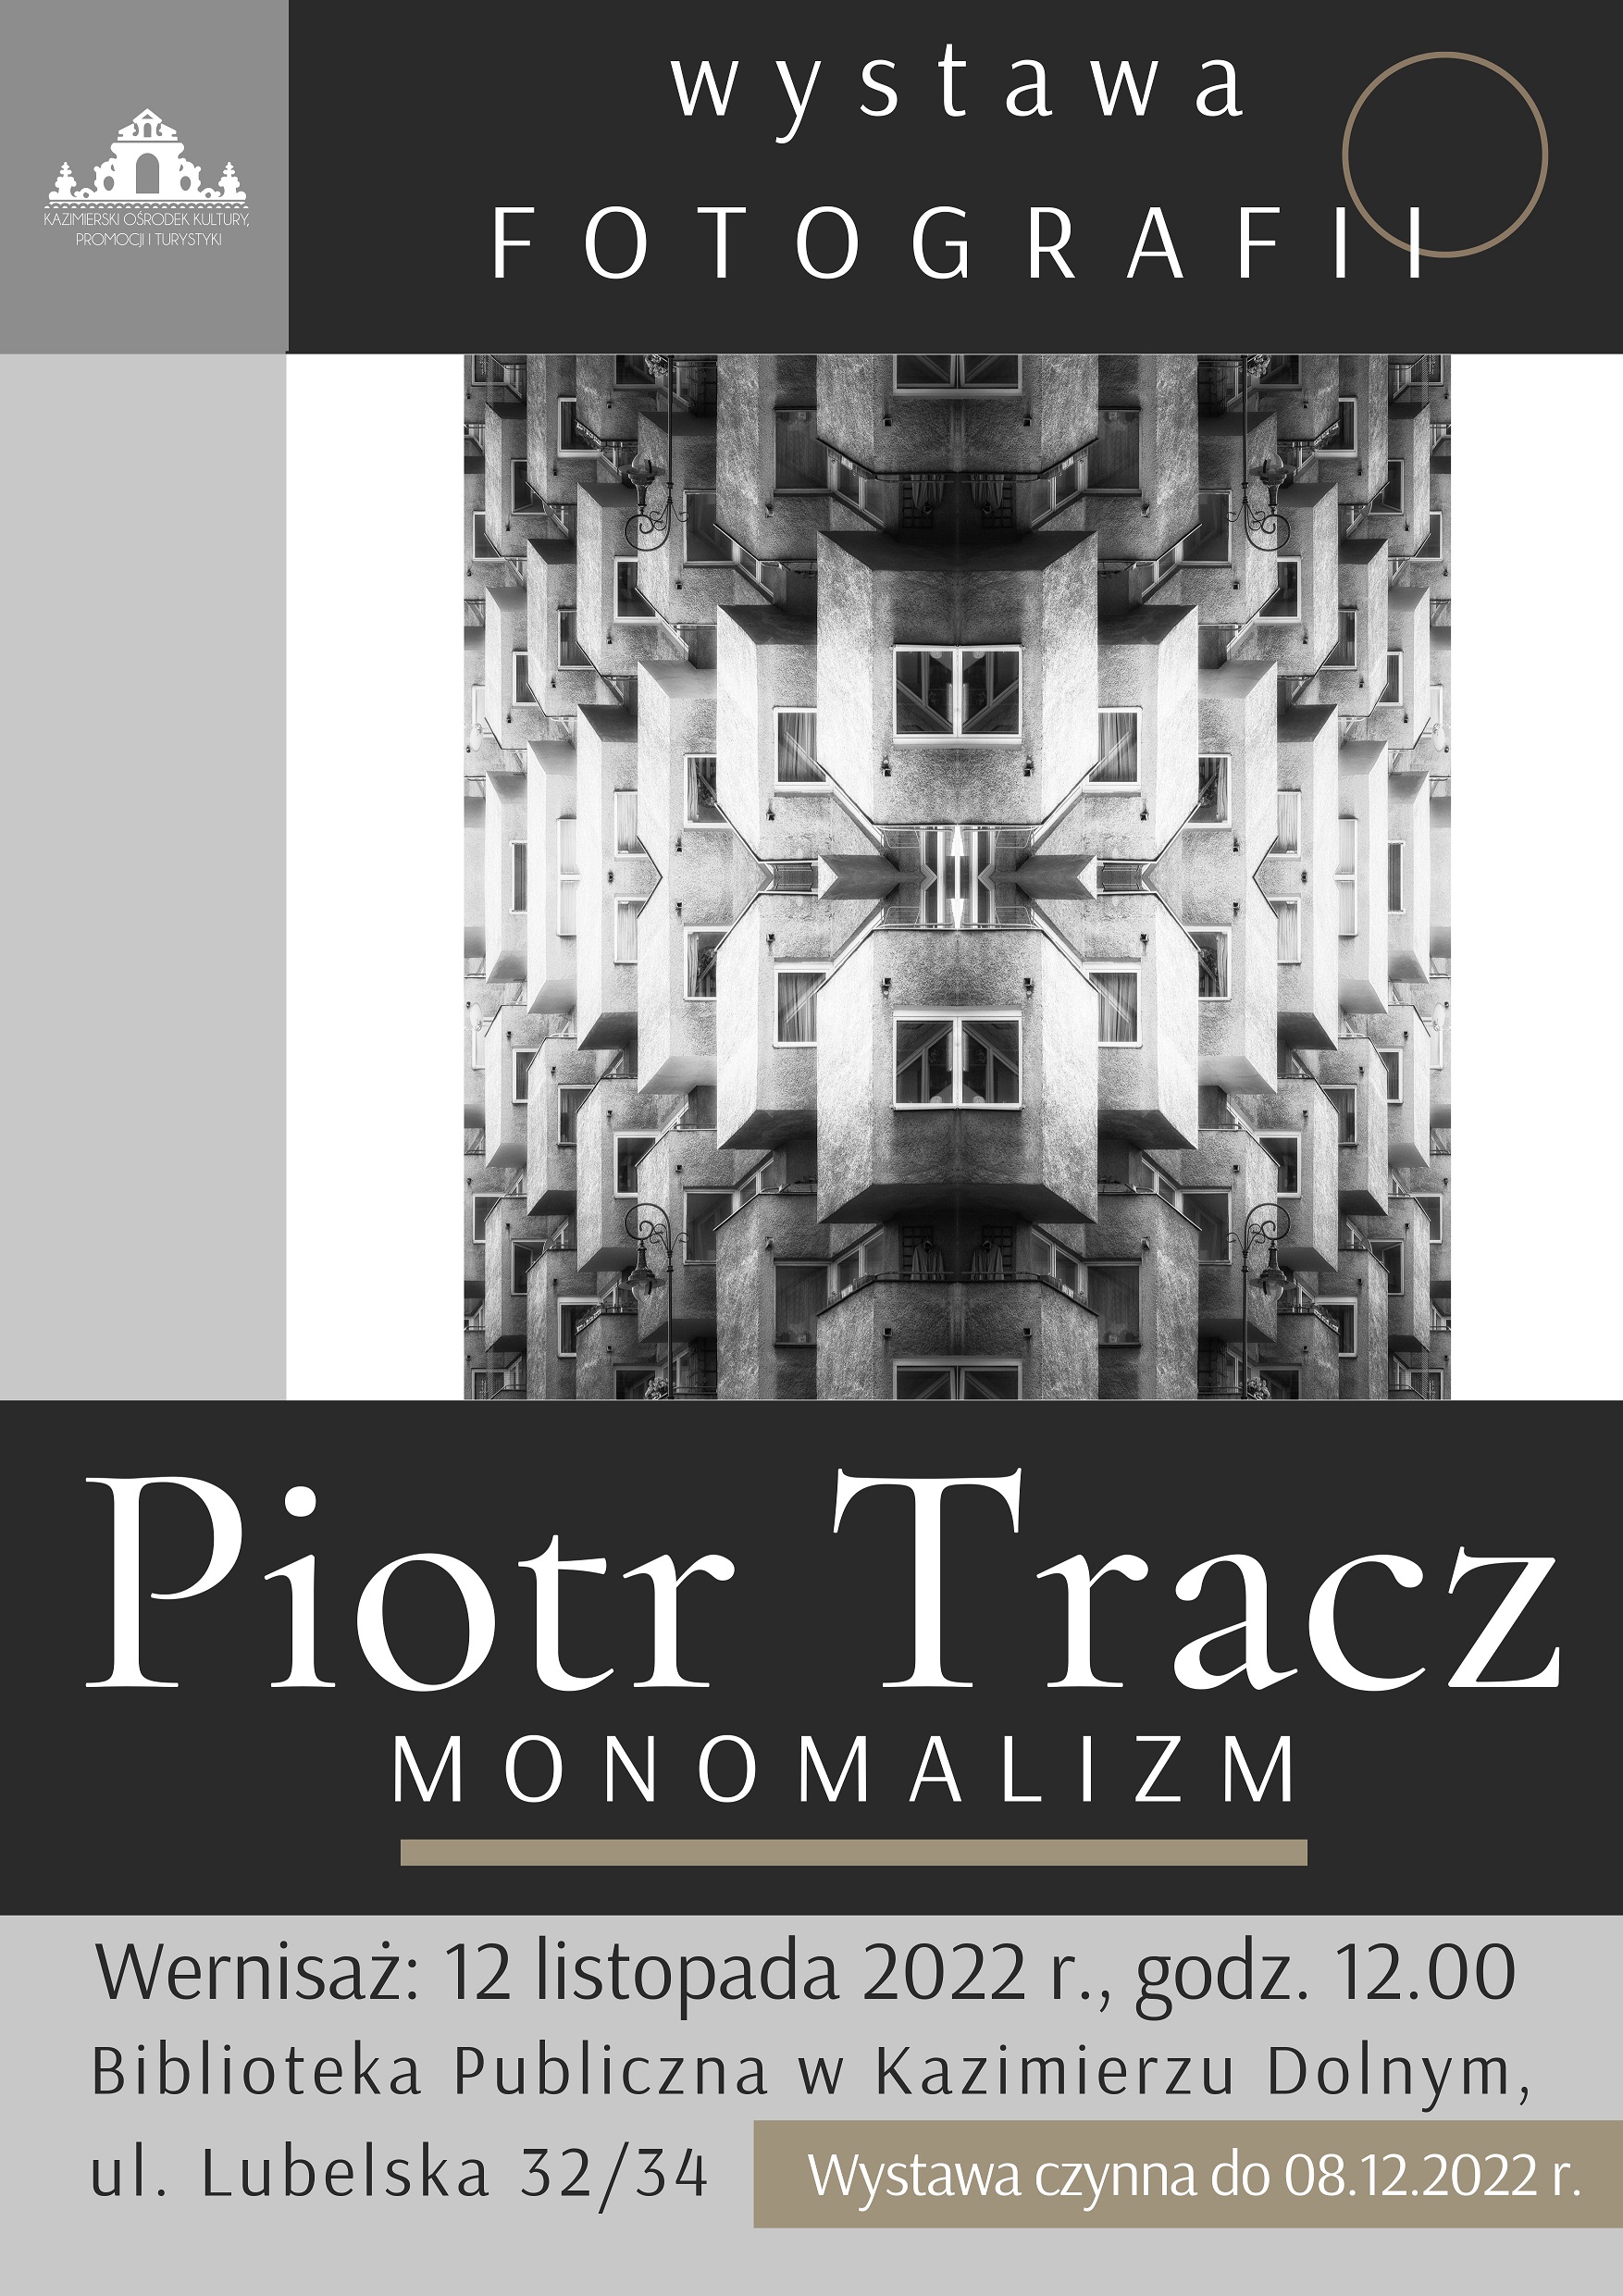 Zdjęcie prezentuje plakat zapraszający na wystawę fotografii Piotra Tracza w kazimierskiej bibliotece.